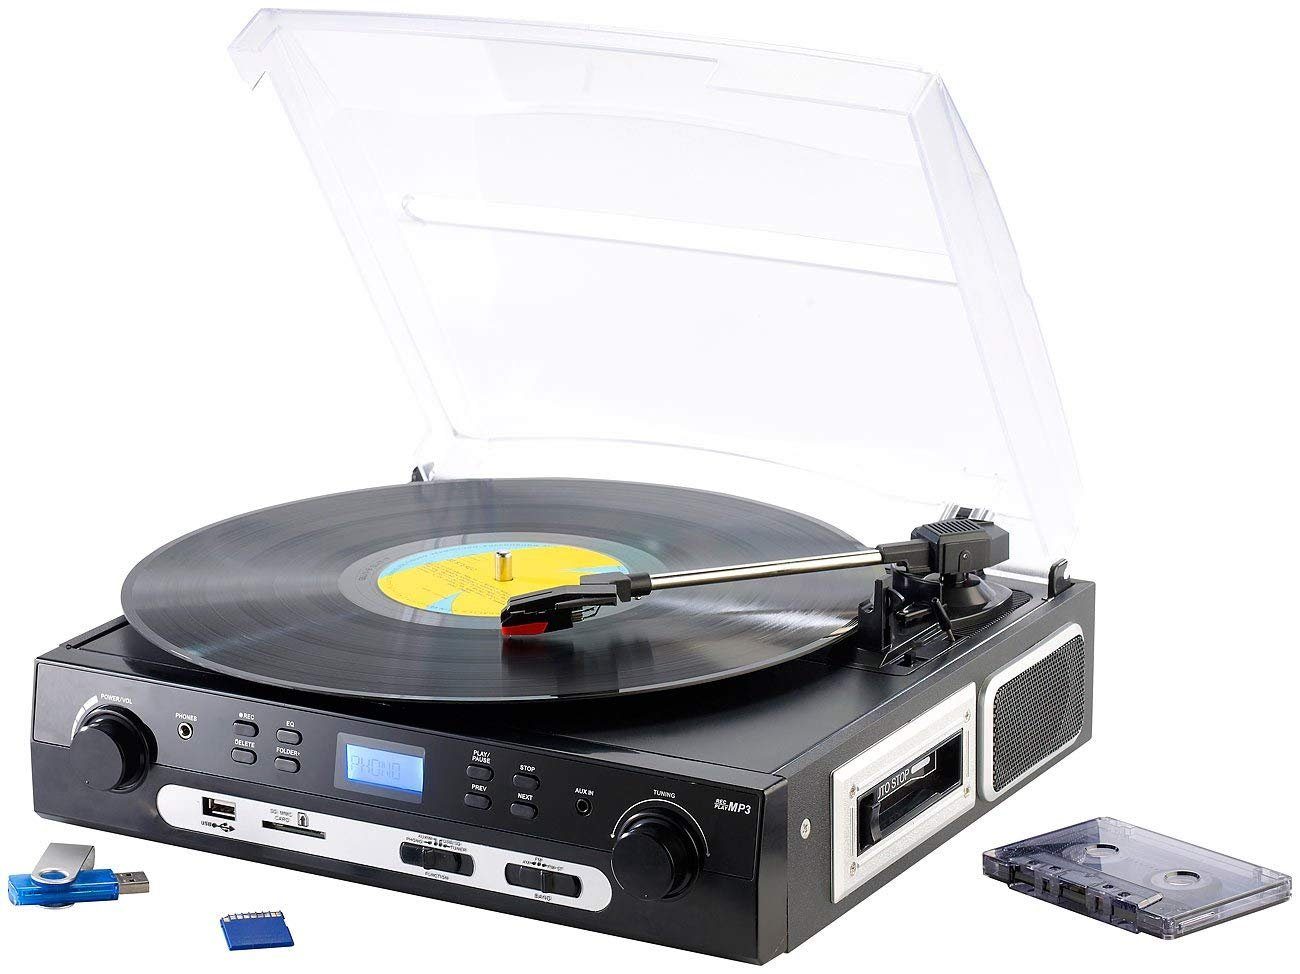 und Plattenspieler Q-Sonic MC (Riemenantrieb) Multifunktionsspieler Schallplatten Digitalisierer UPL-855.MP3